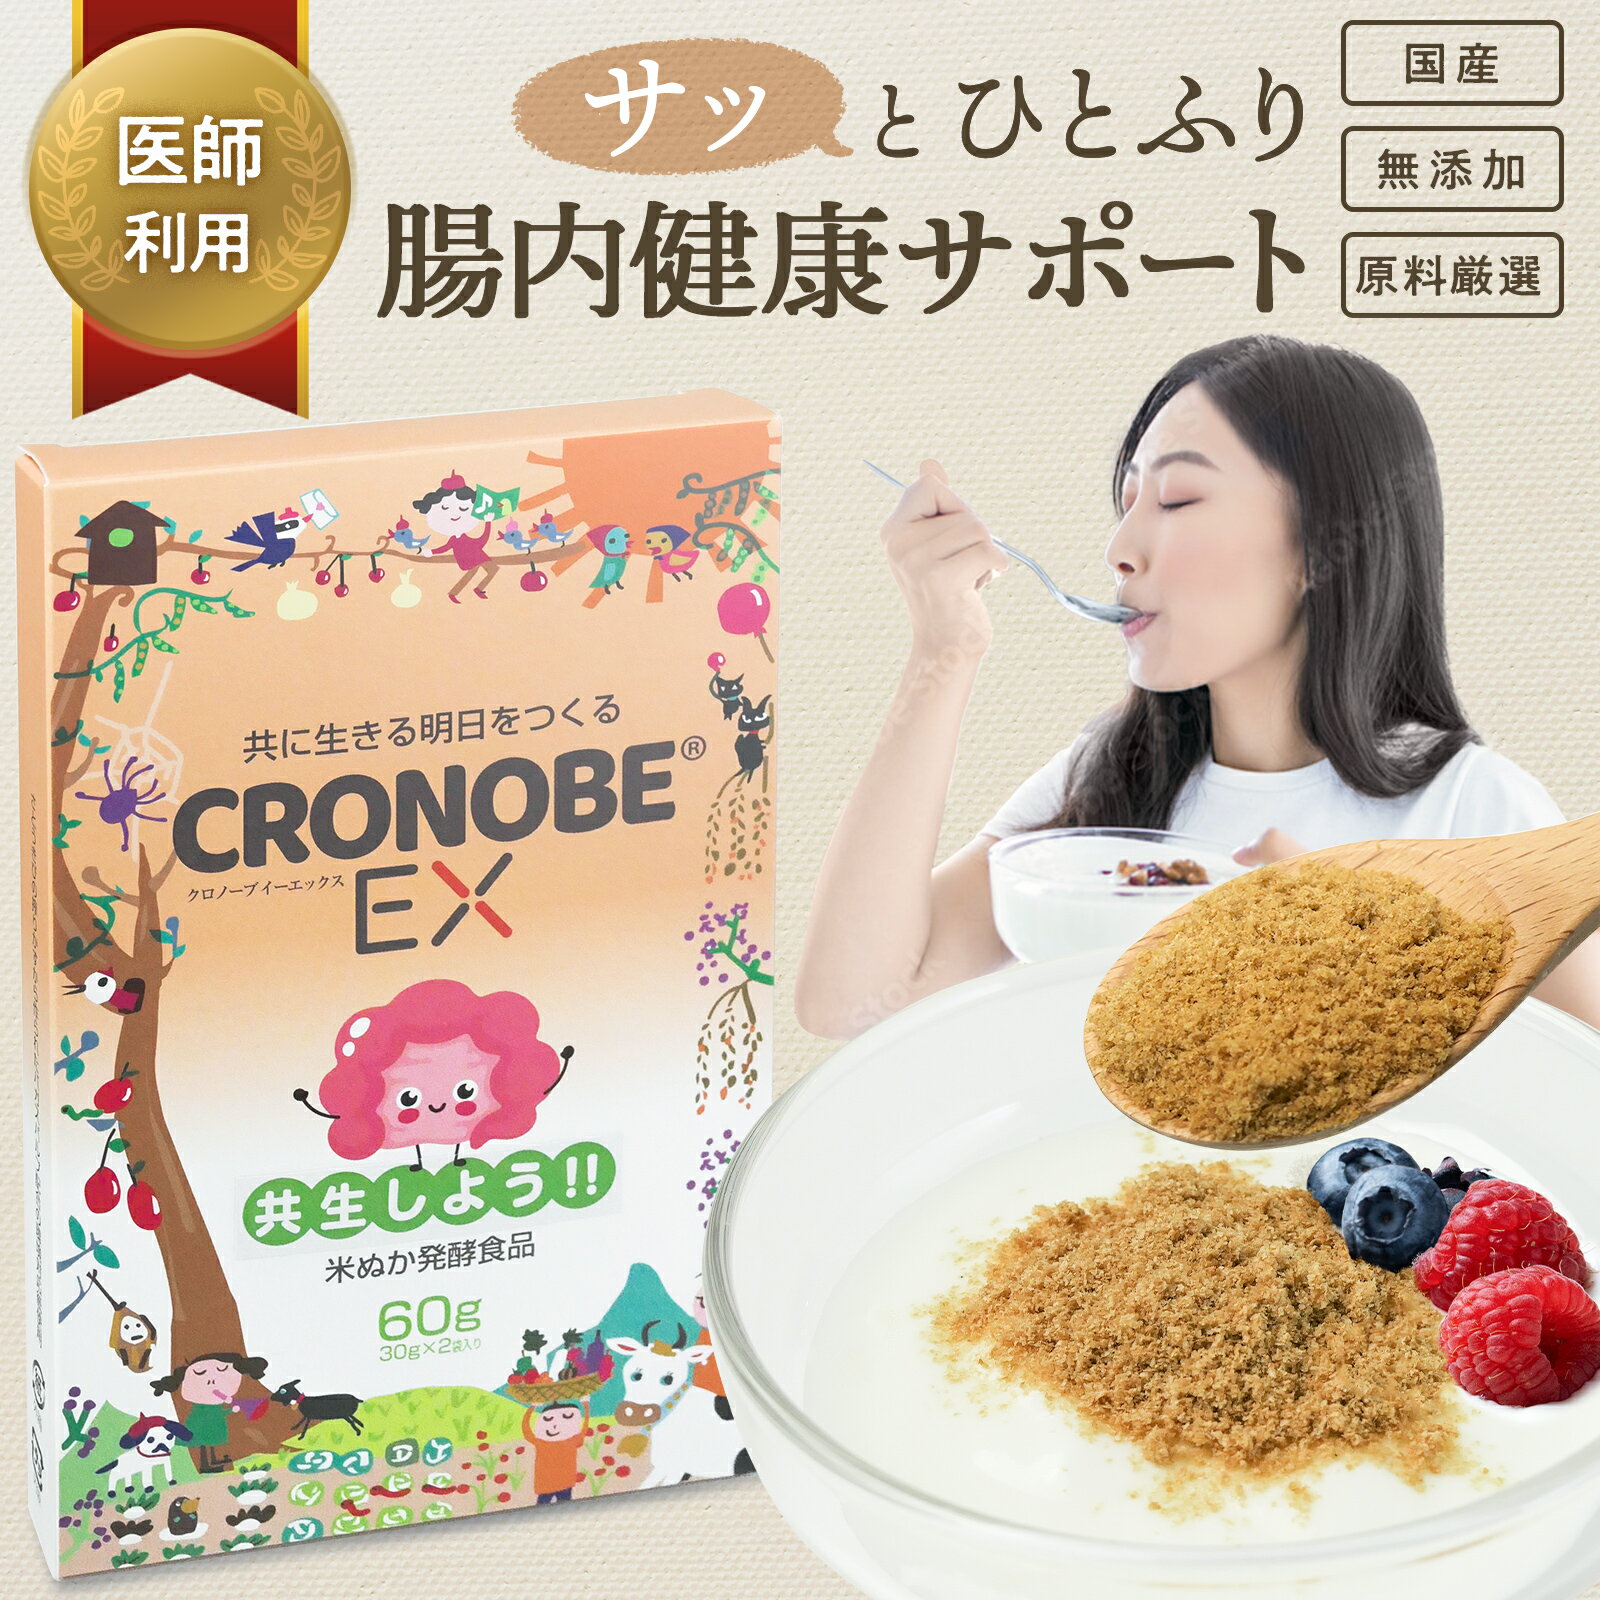 【クロノーブEX】米ぬか発酵腸活サプリ 乳酸菌 腸活サプリ プロバイオティクス